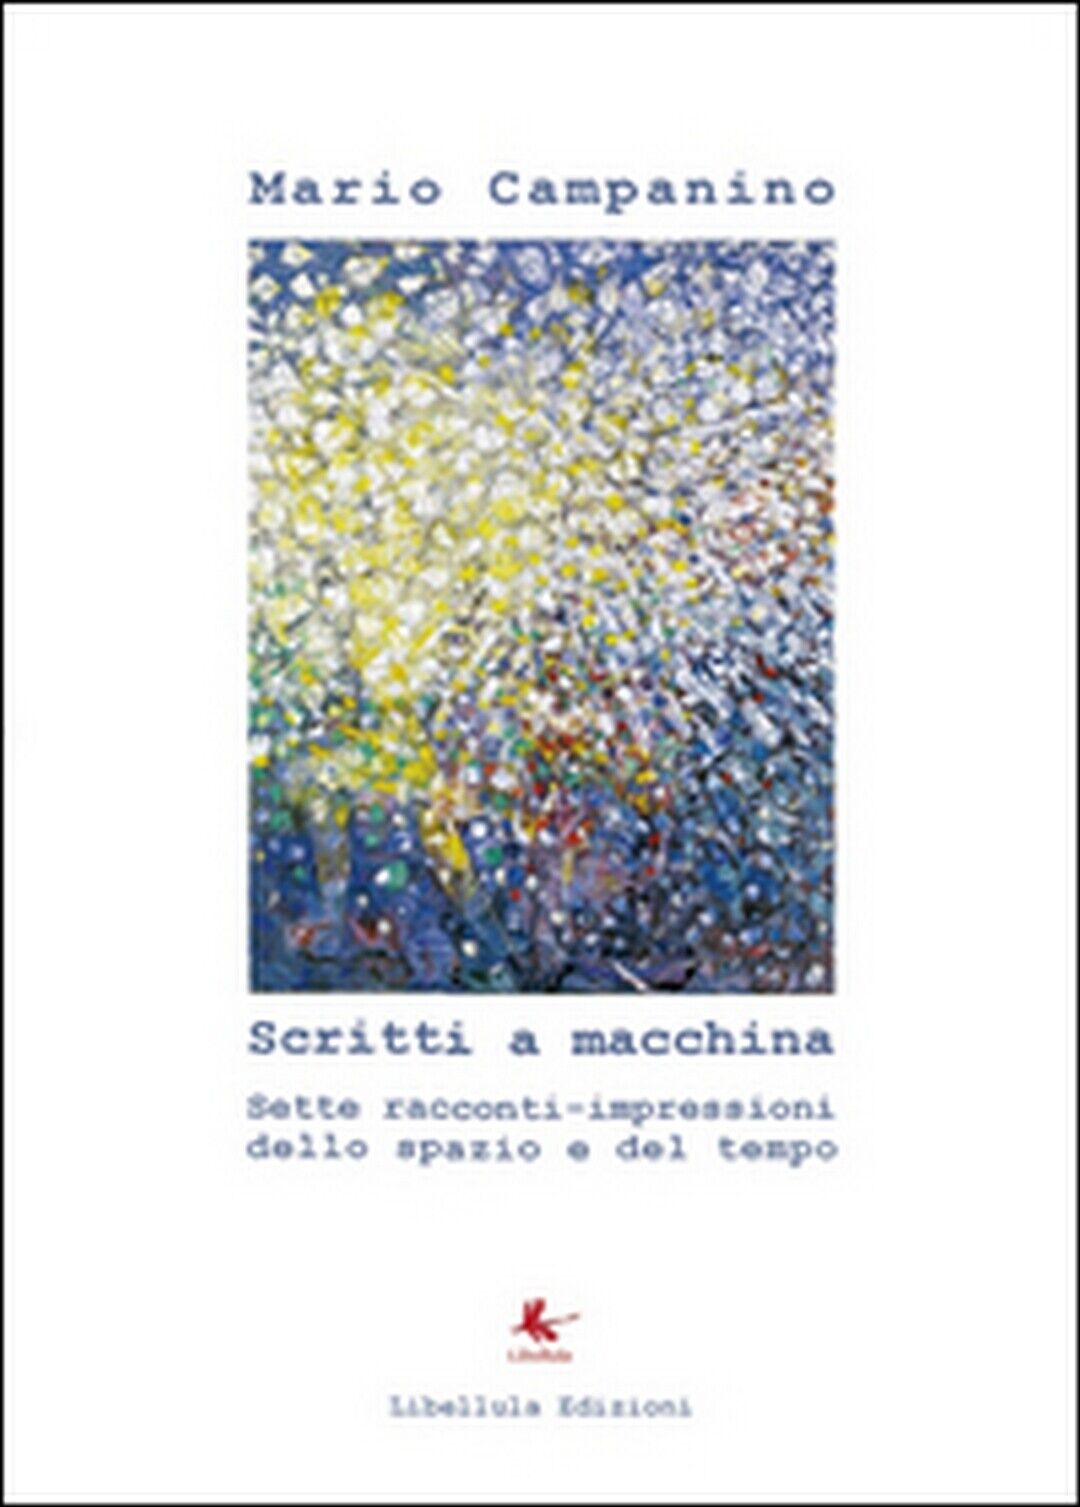 Scritti a macchina  di Mario Campanino,  2014,  Libellula Edizioni